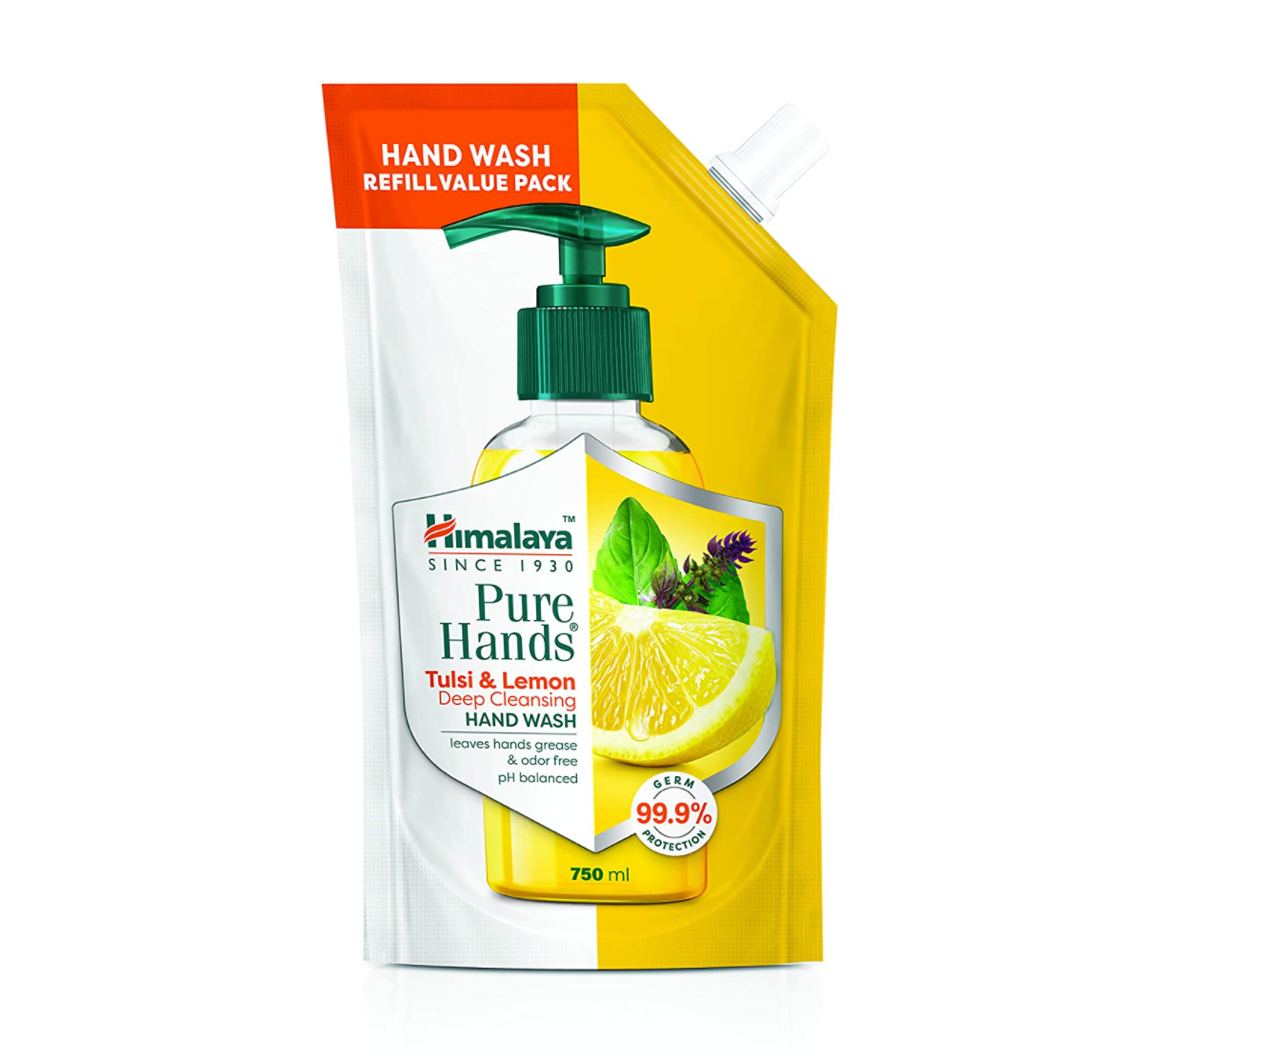 Himalaya Tulsi and Lemon Hand Wash Deal